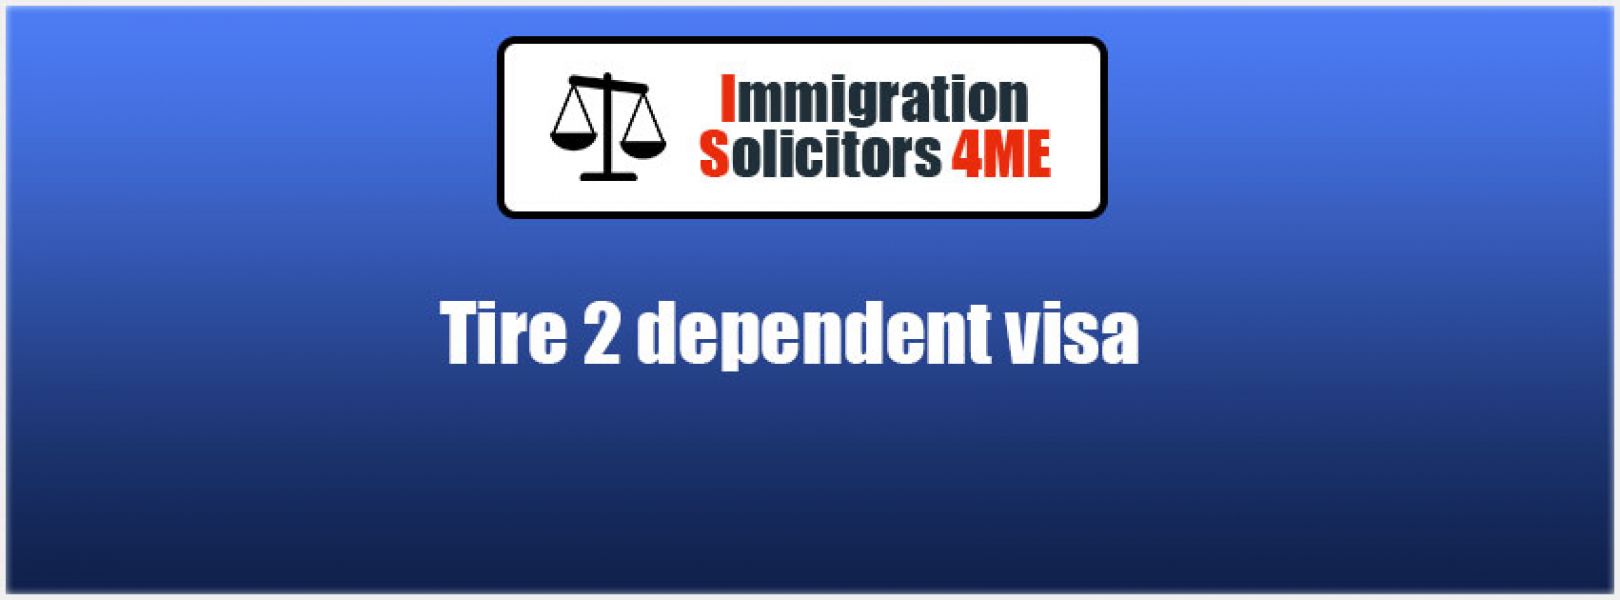 Tier 2 dependent visa